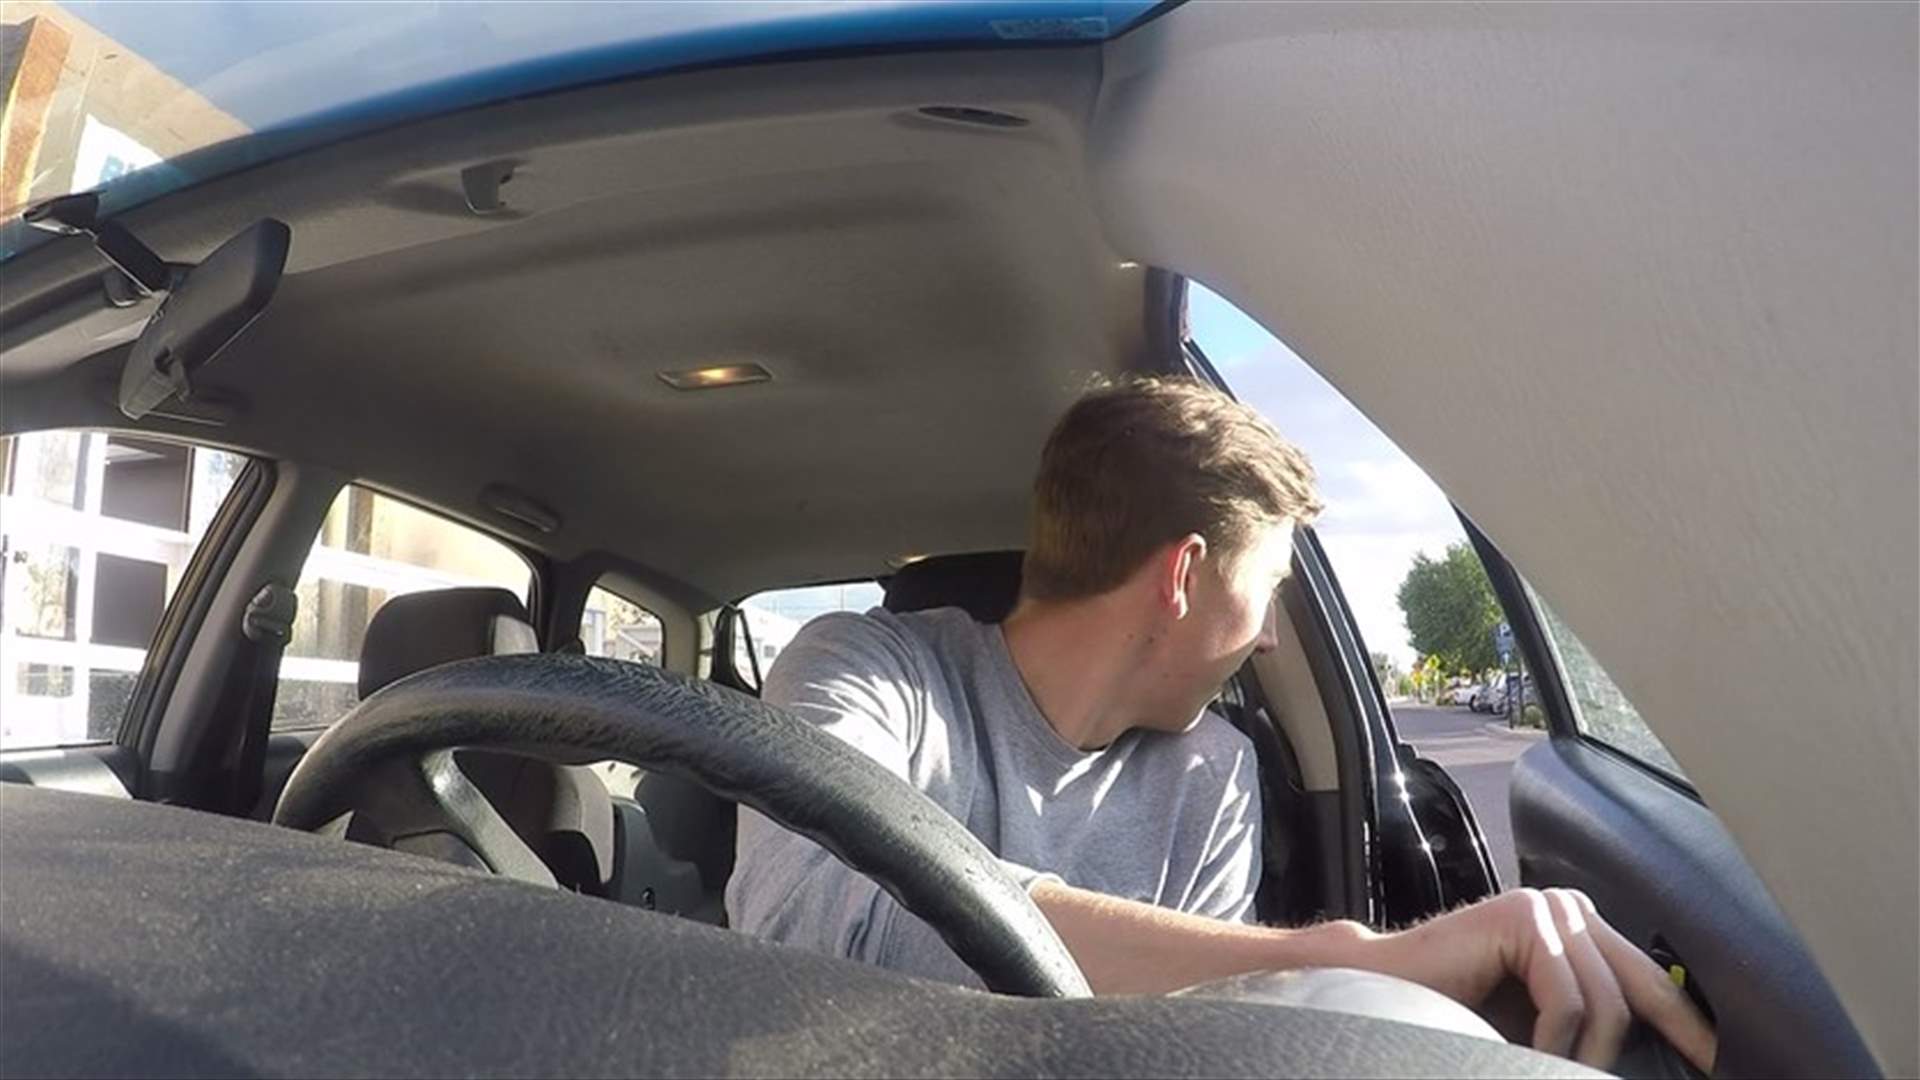 بالفيديو - لماذا يفتح السائقون الهولنديون باب السيارة باليد اليُمنى؟